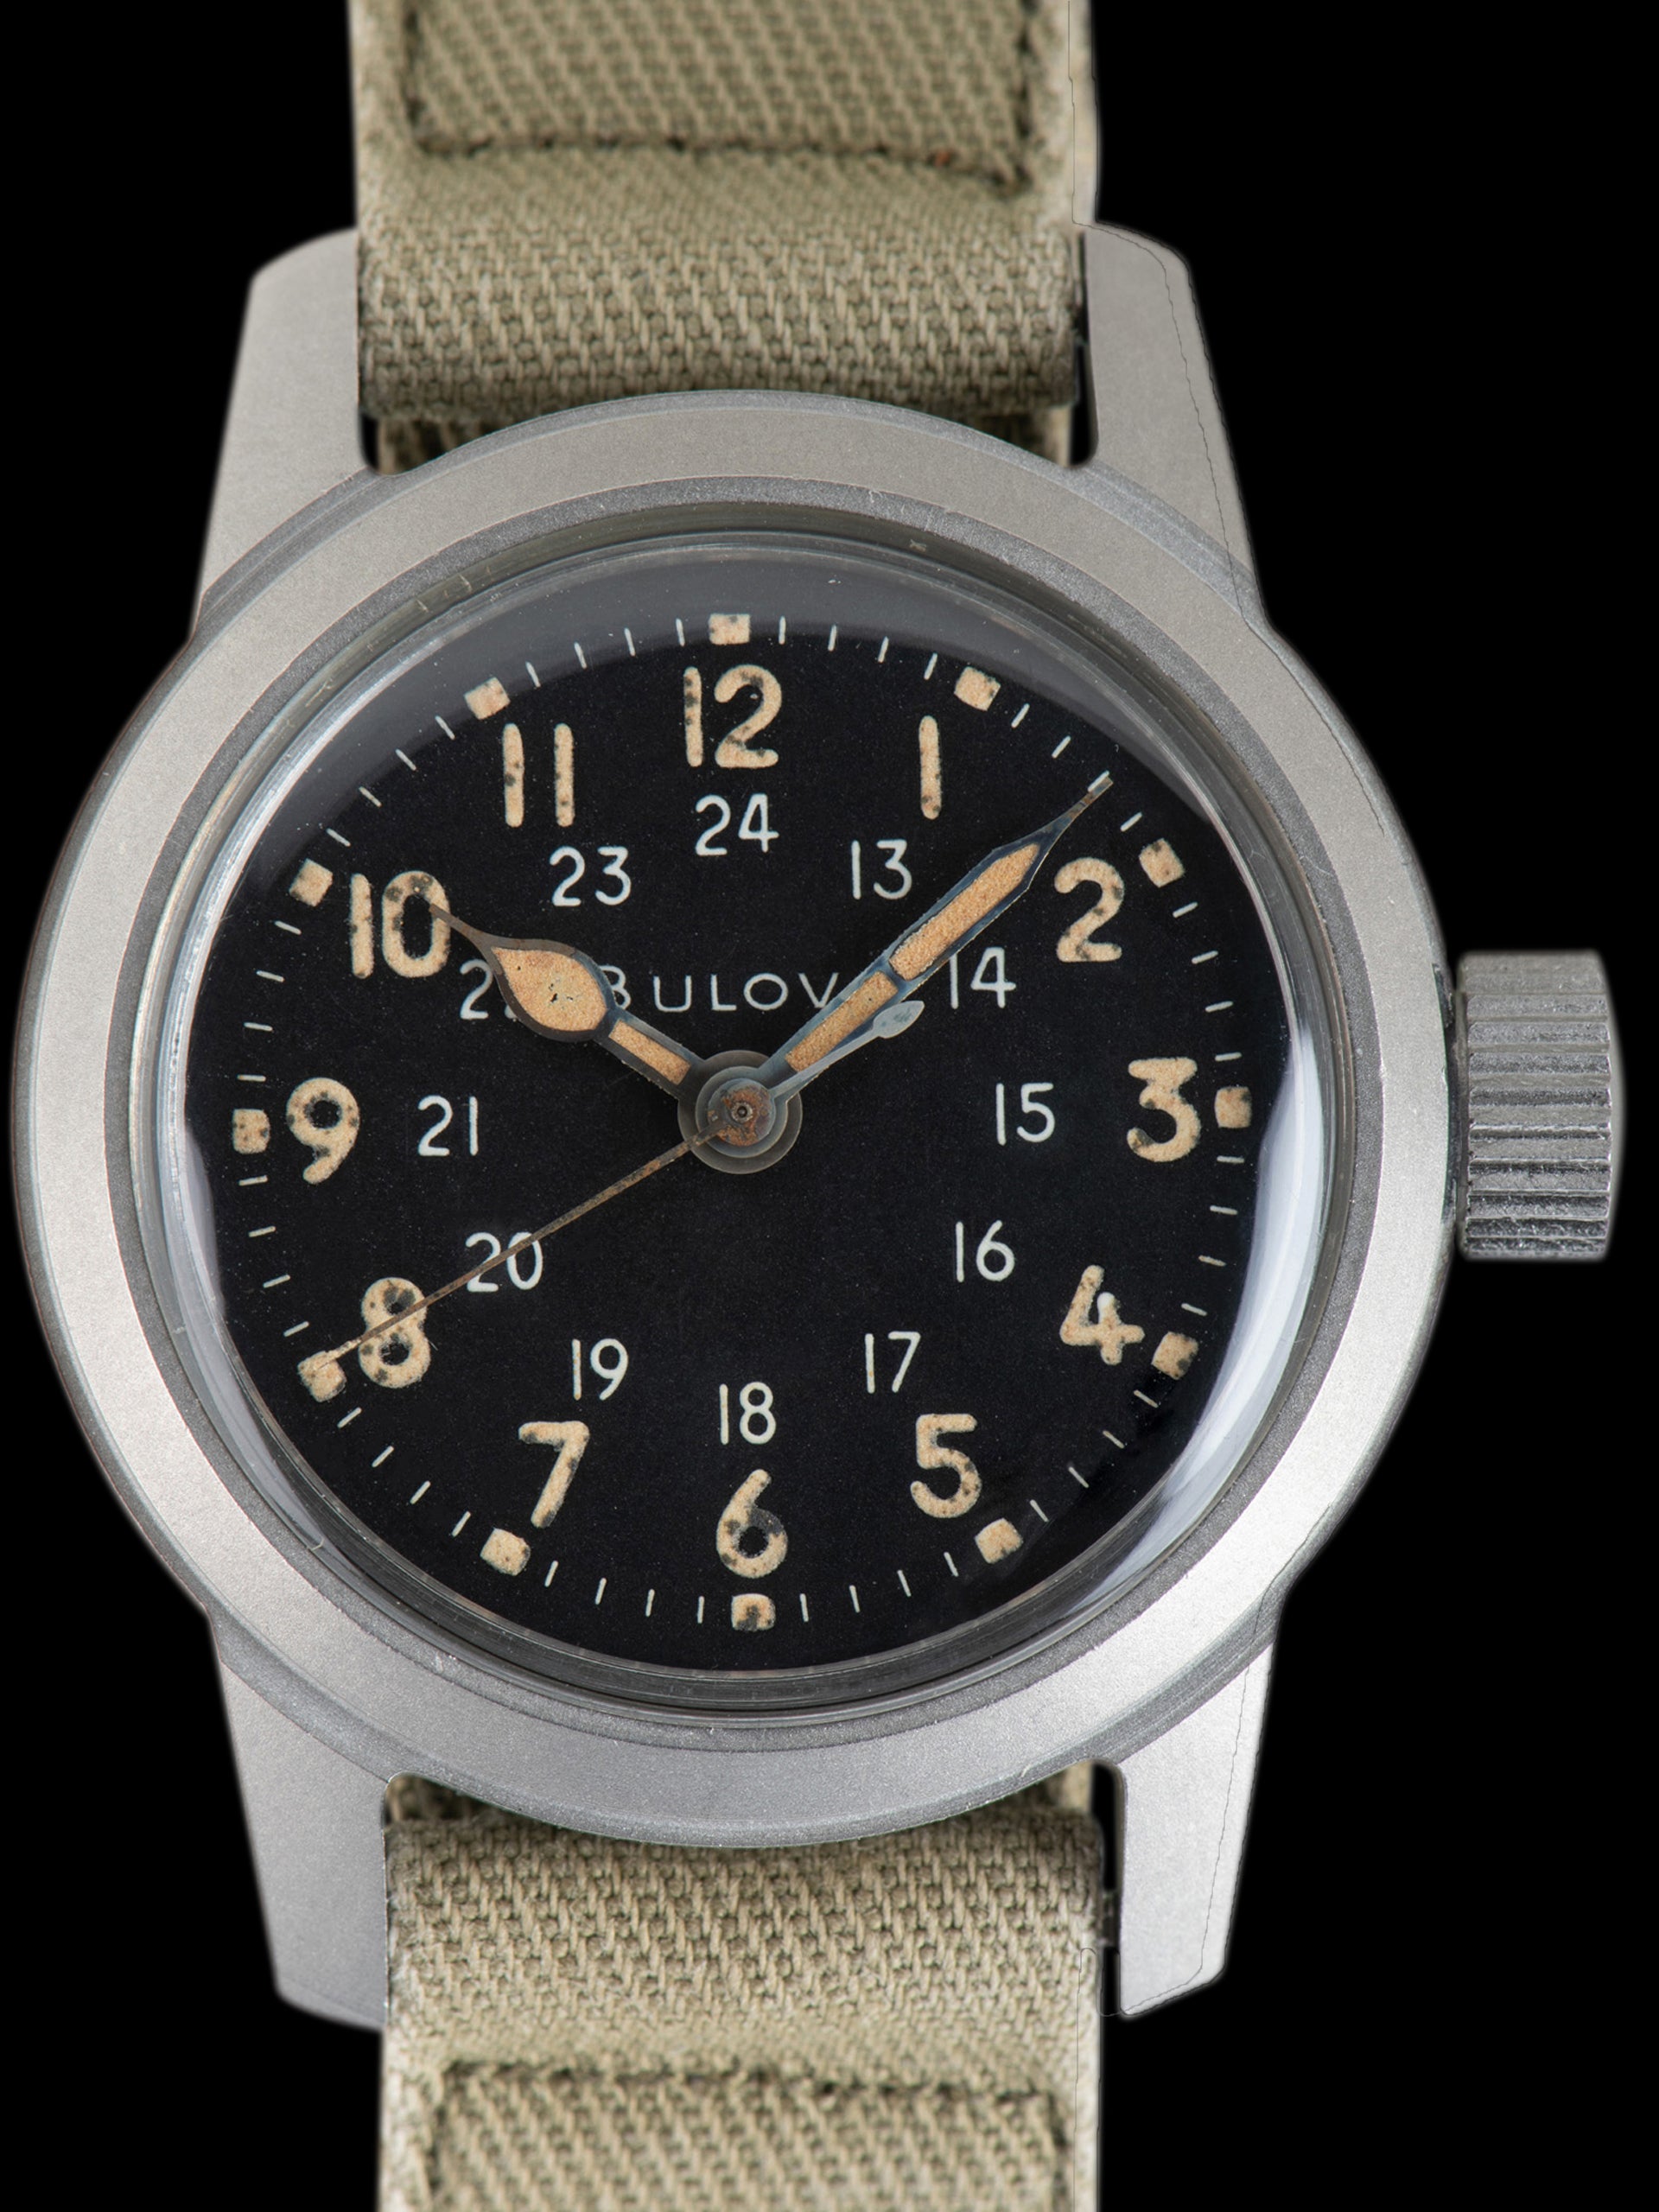 1963 Bulova (MIL-W-3818A) U.S Military Watch